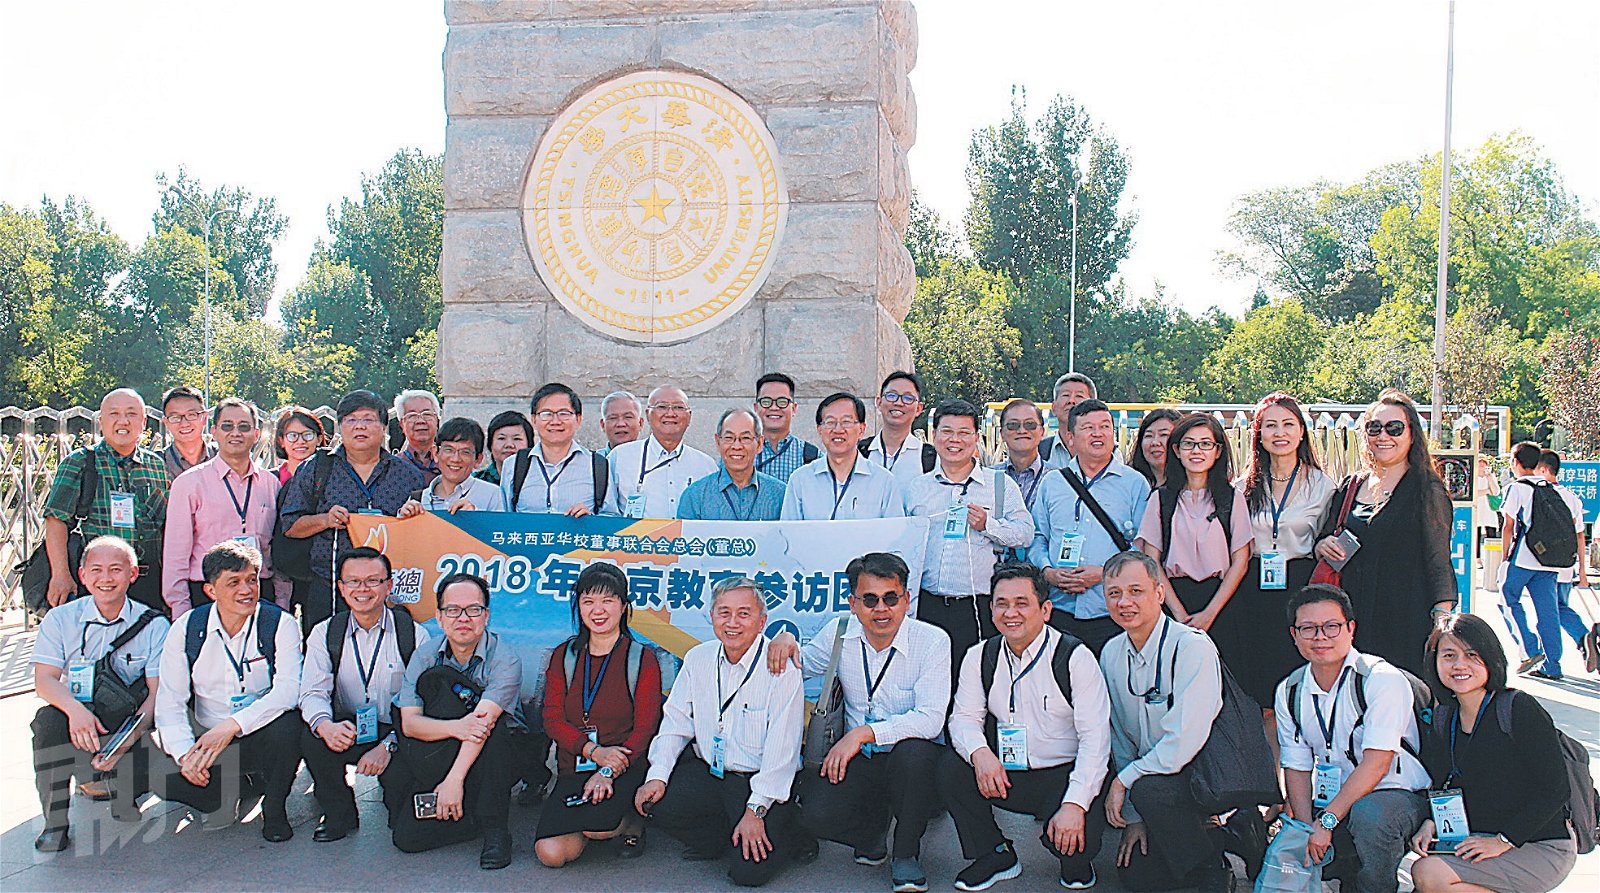 由董总率领的2018北京教育参访团，共有33名独中董事与校长等参与。图为众人在清华大学附中前合影留念。